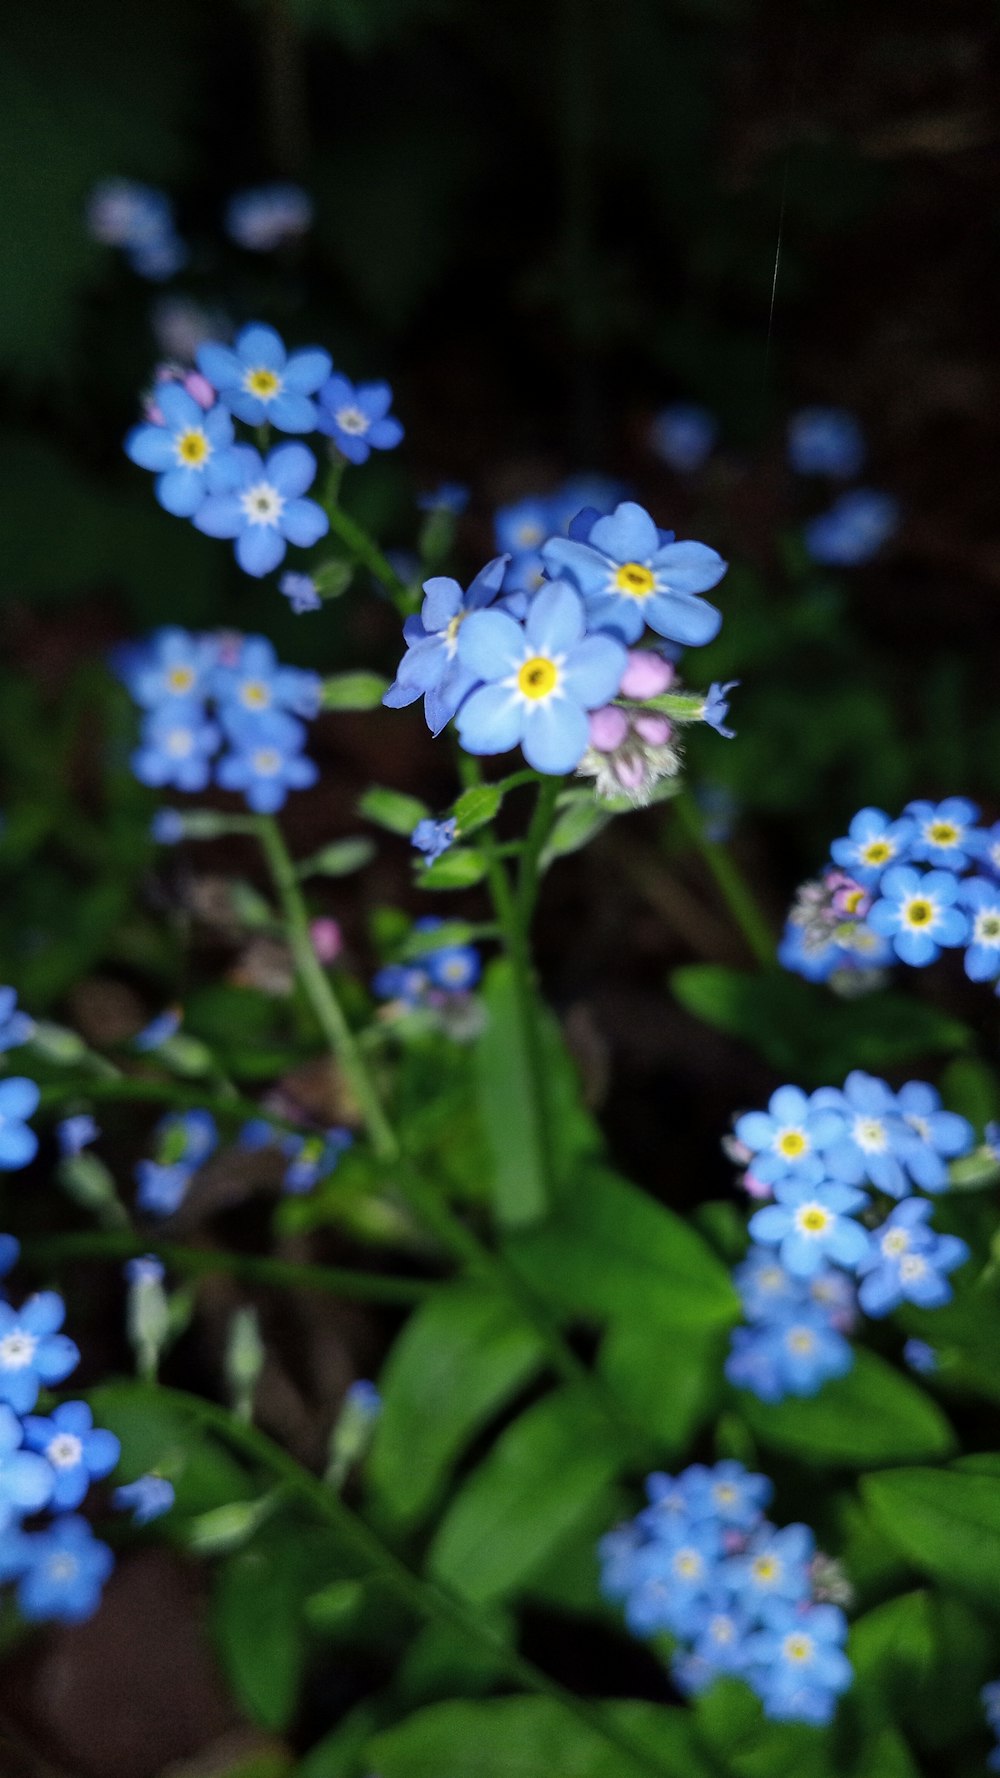 Flores azules y blancas en lente de cambio de inclinación